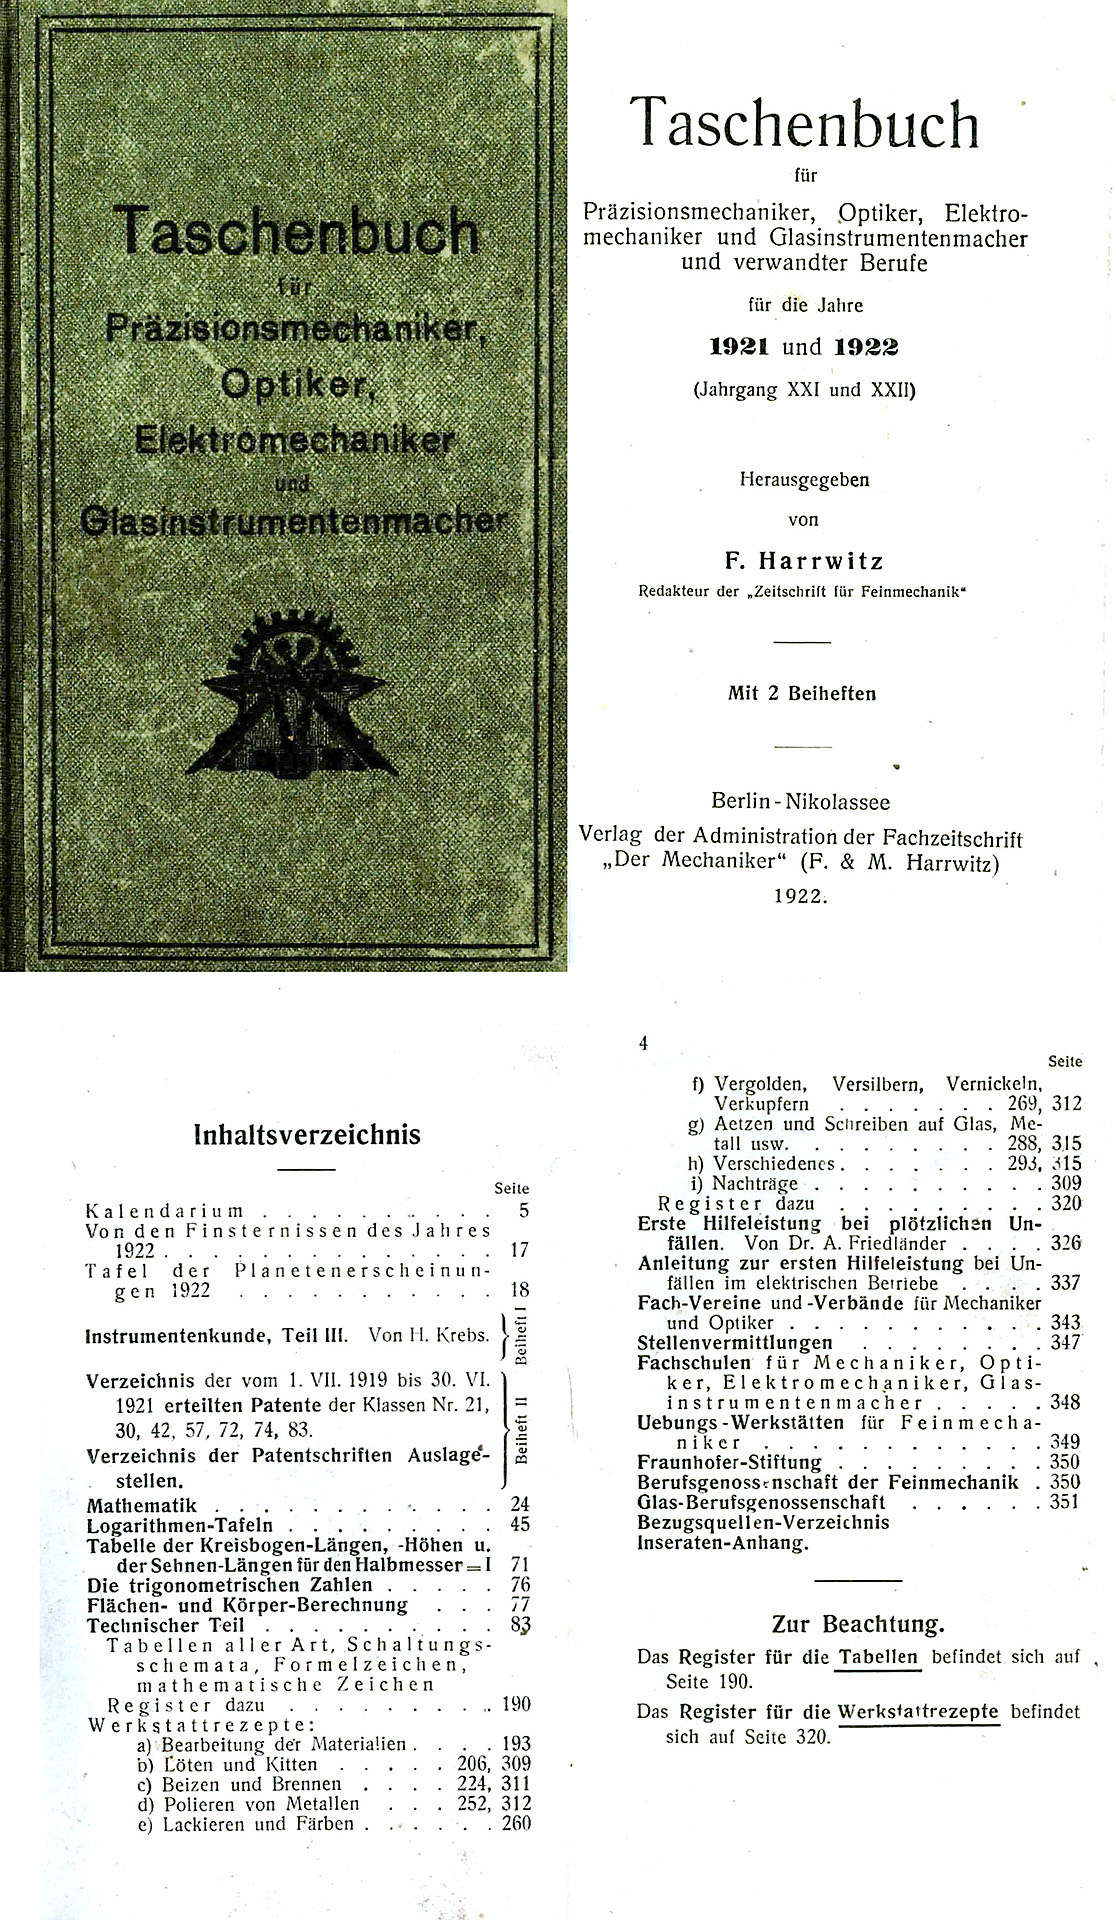 Taschenbuch für Präzisionsmechaniker, Optiker, Elektromechaniker und Glasinstrumentenmacher - Harrwitz, F.